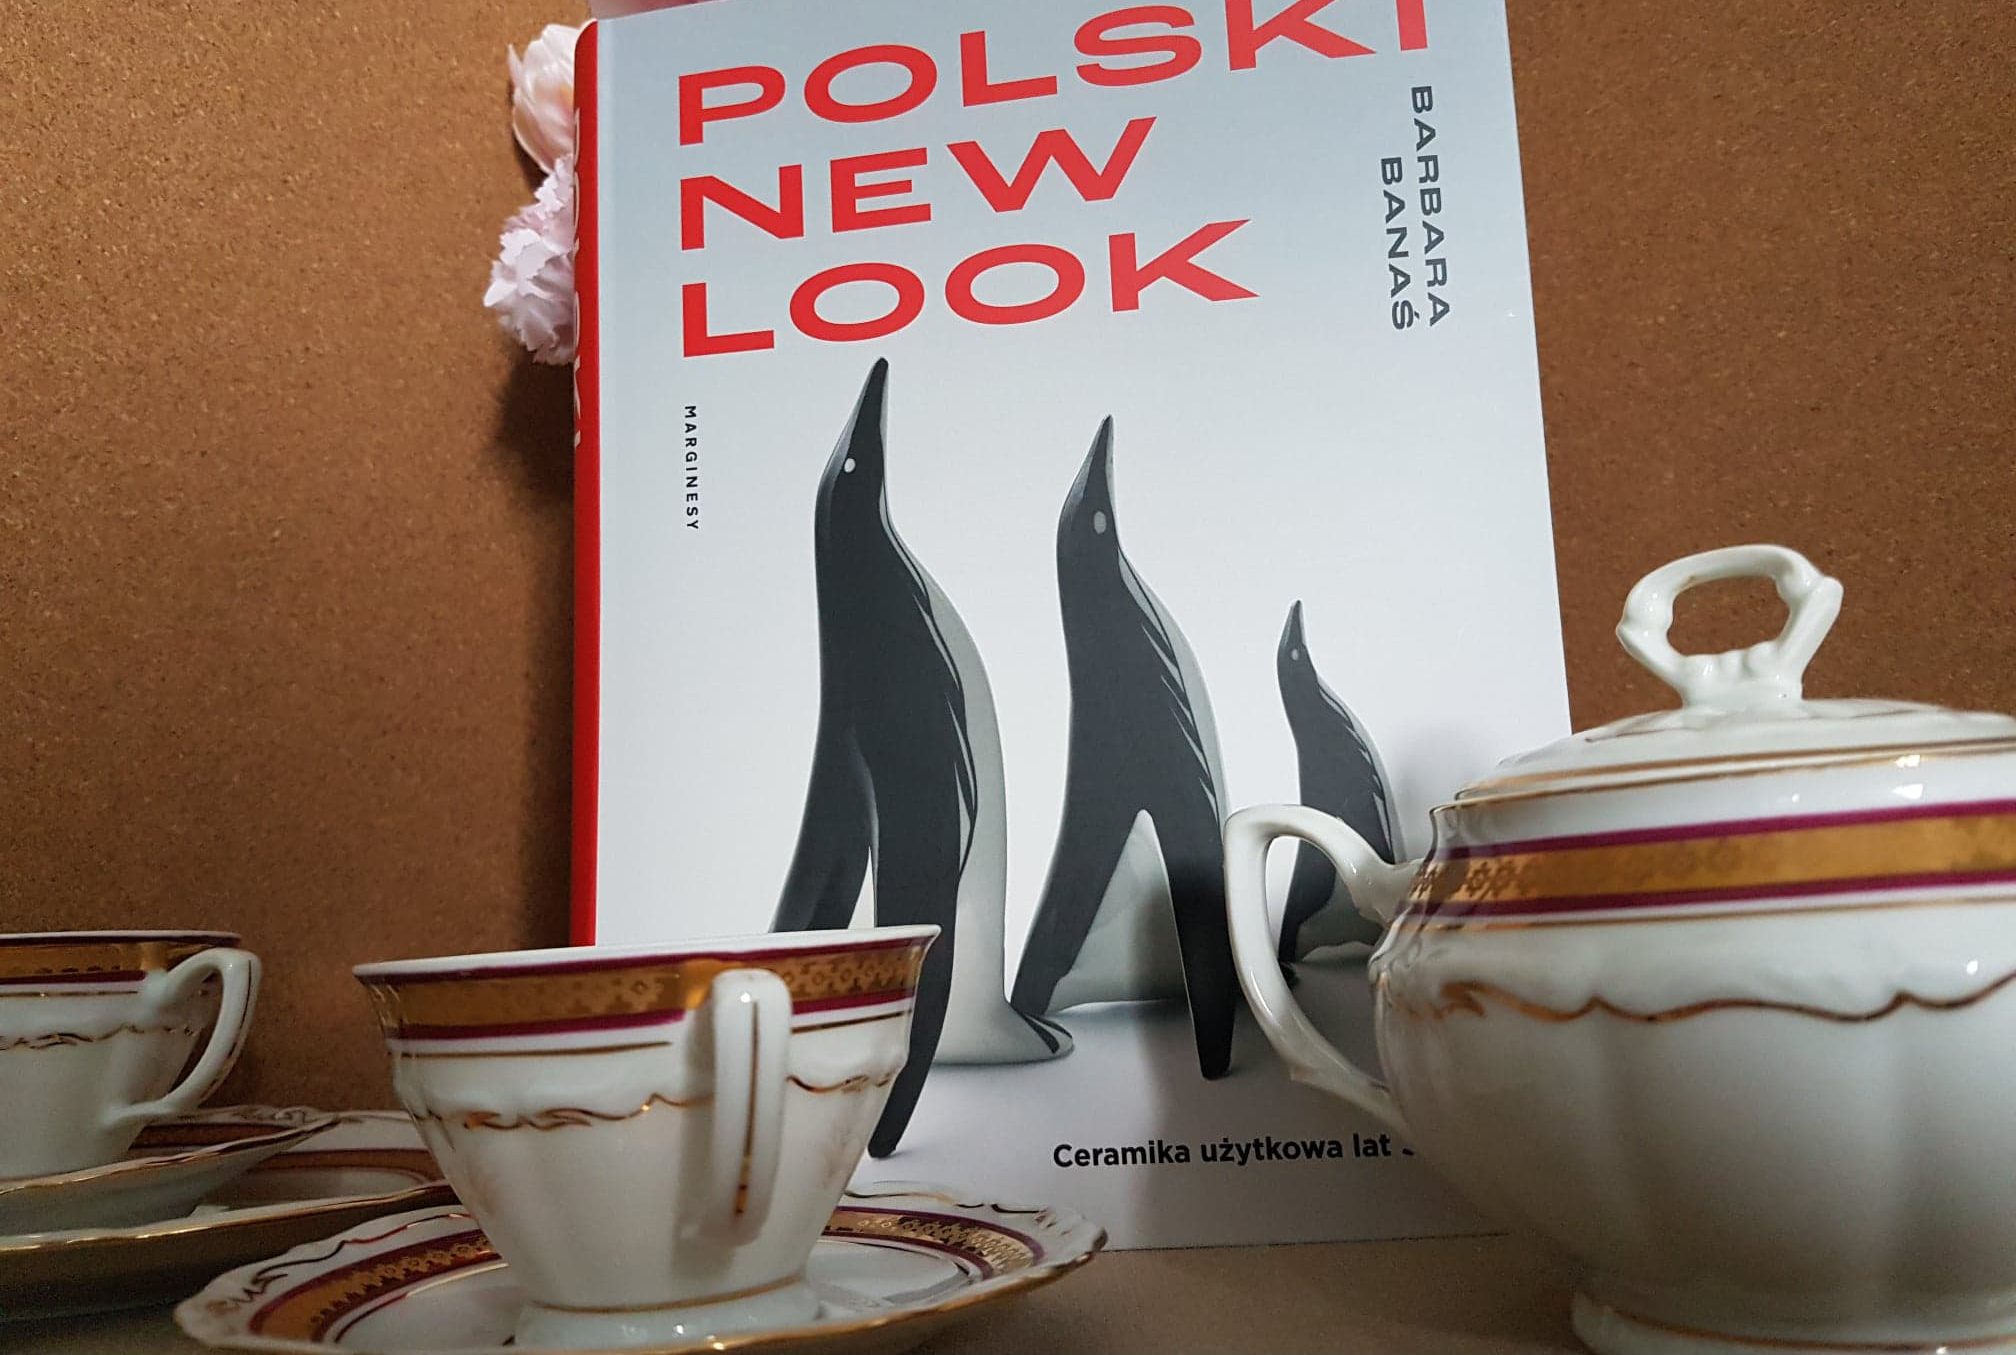 Polski new look recenzja